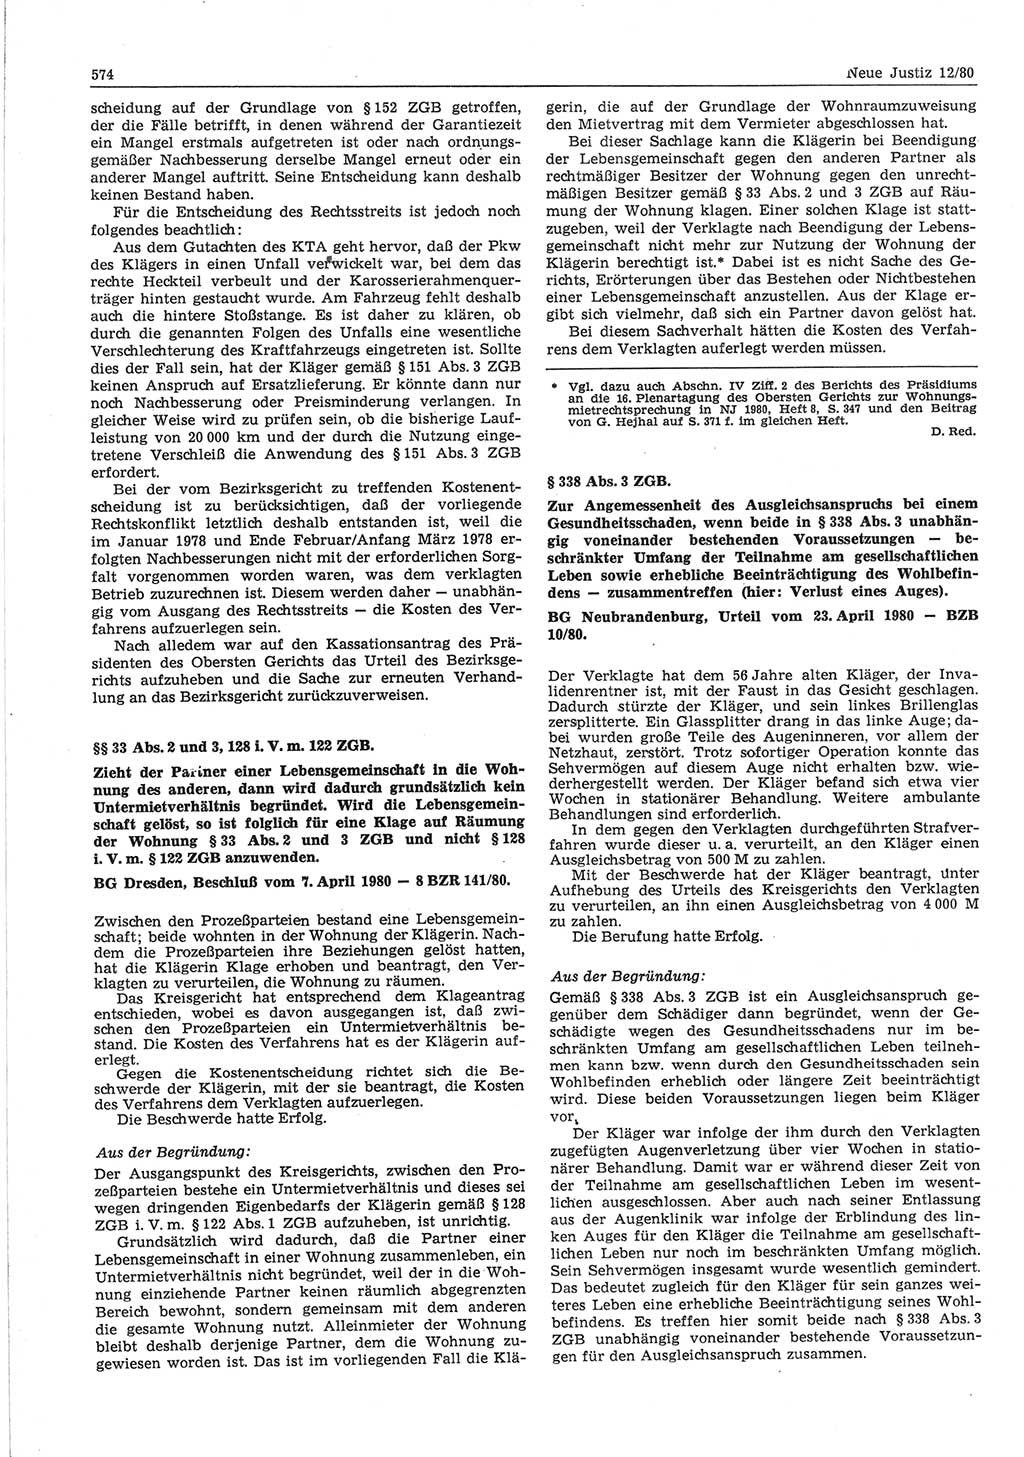 Neue Justiz (NJ), Zeitschrift für sozialistisches Recht und Gesetzlichkeit [Deutsche Demokratische Republik (DDR)], 34. Jahrgang 1980, Seite 574 (NJ DDR 1980, S. 574)